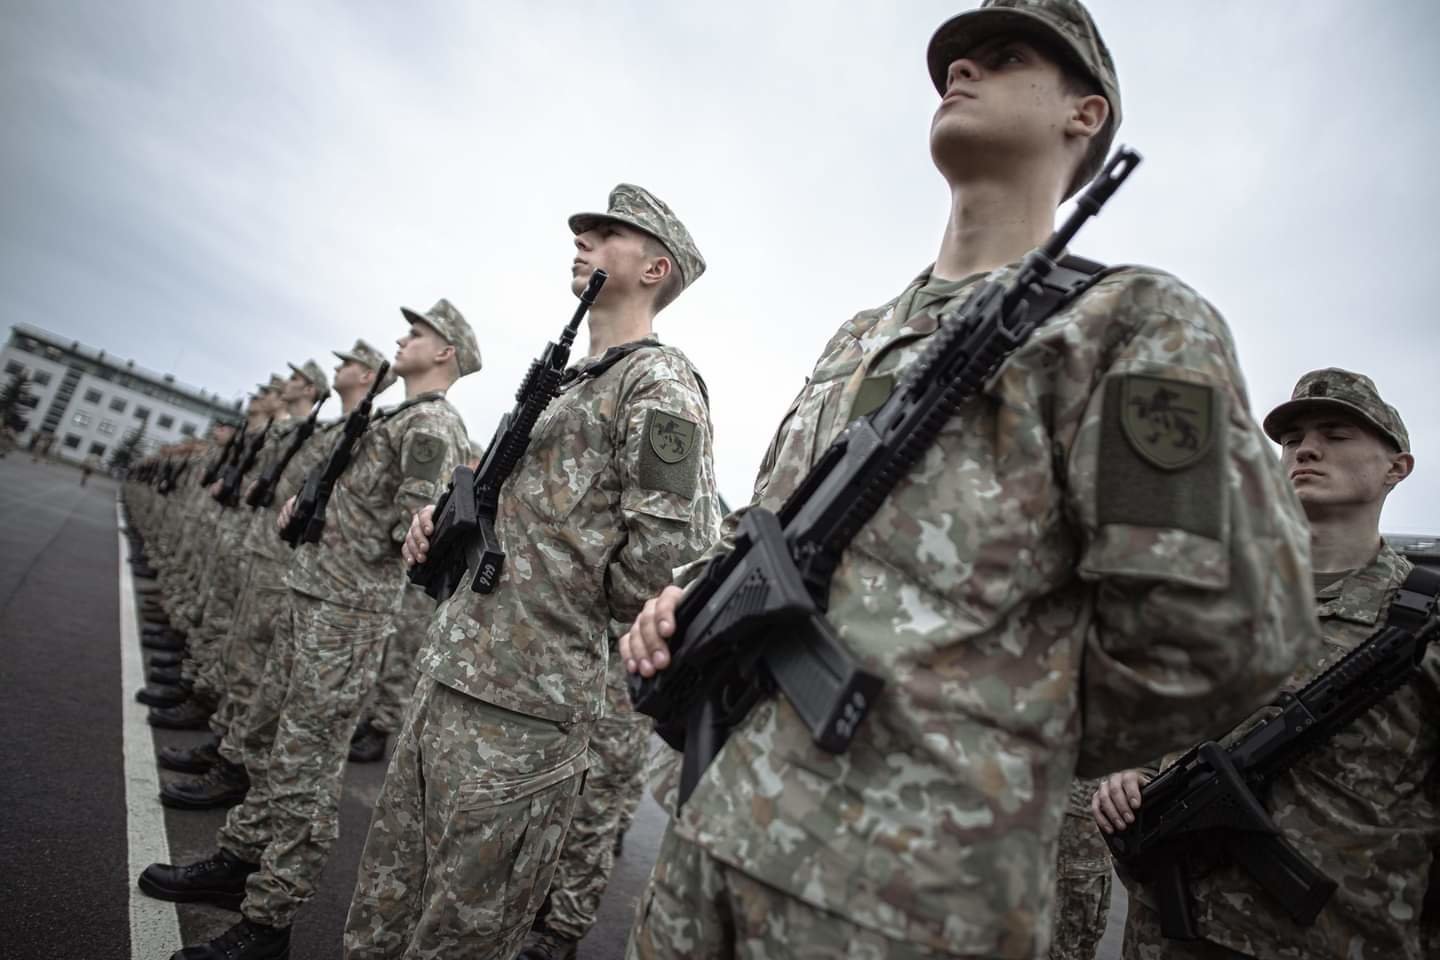  Pradedamas pasirengimas 2021 m. šaukimui į nuolatinę privalomąją pradinę karo tarnybą.<br> Lietuvos kariuomenės nuotr.